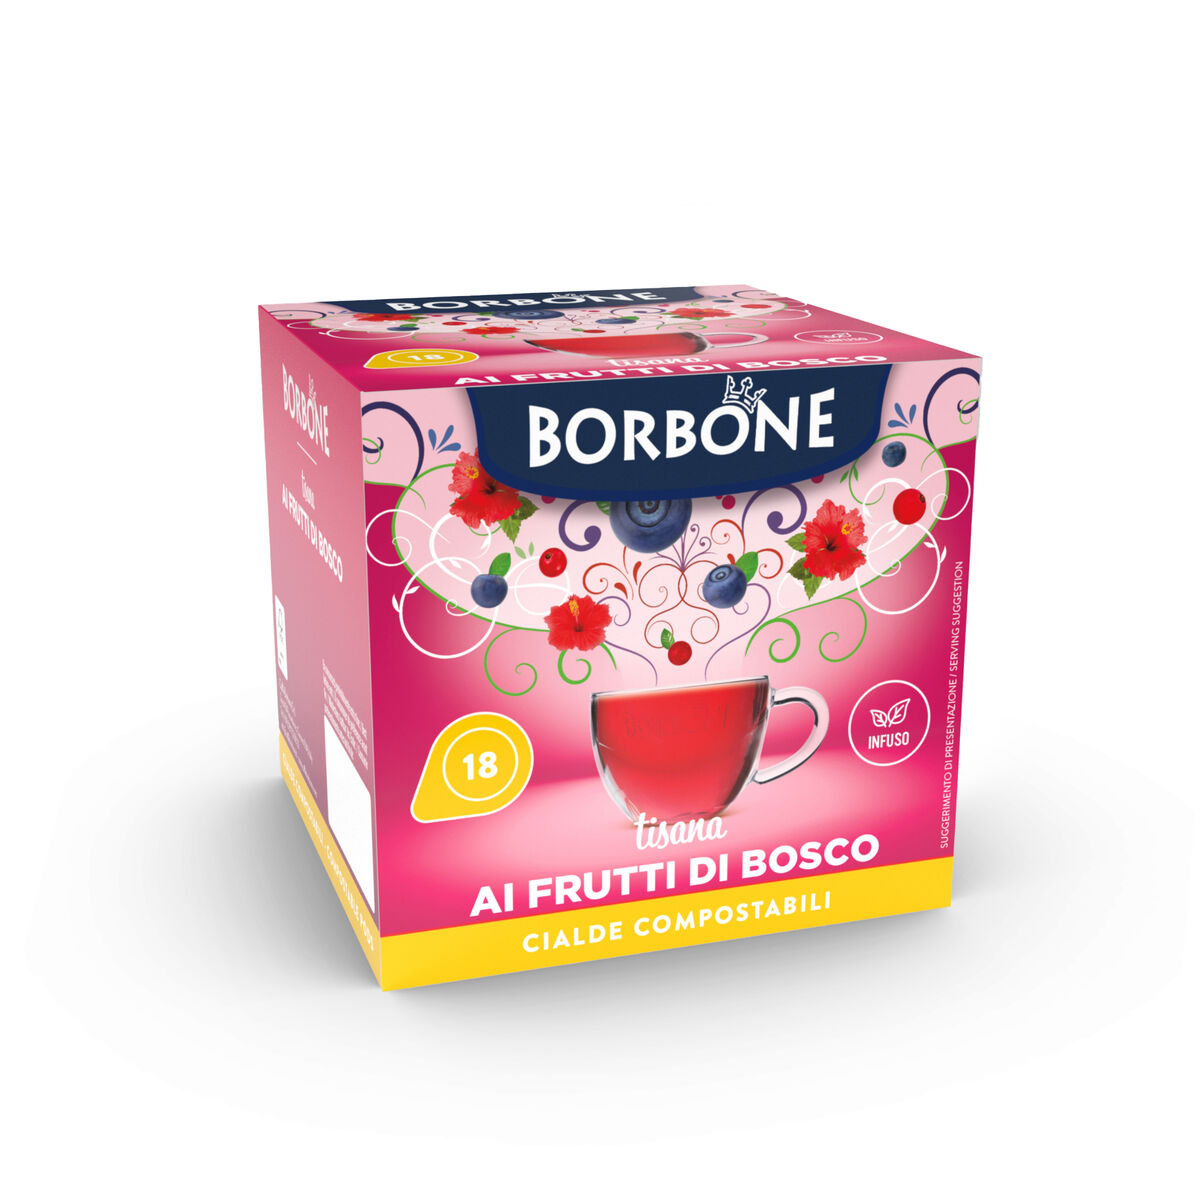 Caffè Borbone - #Maipiùsenza la borraccia firmata Borbone